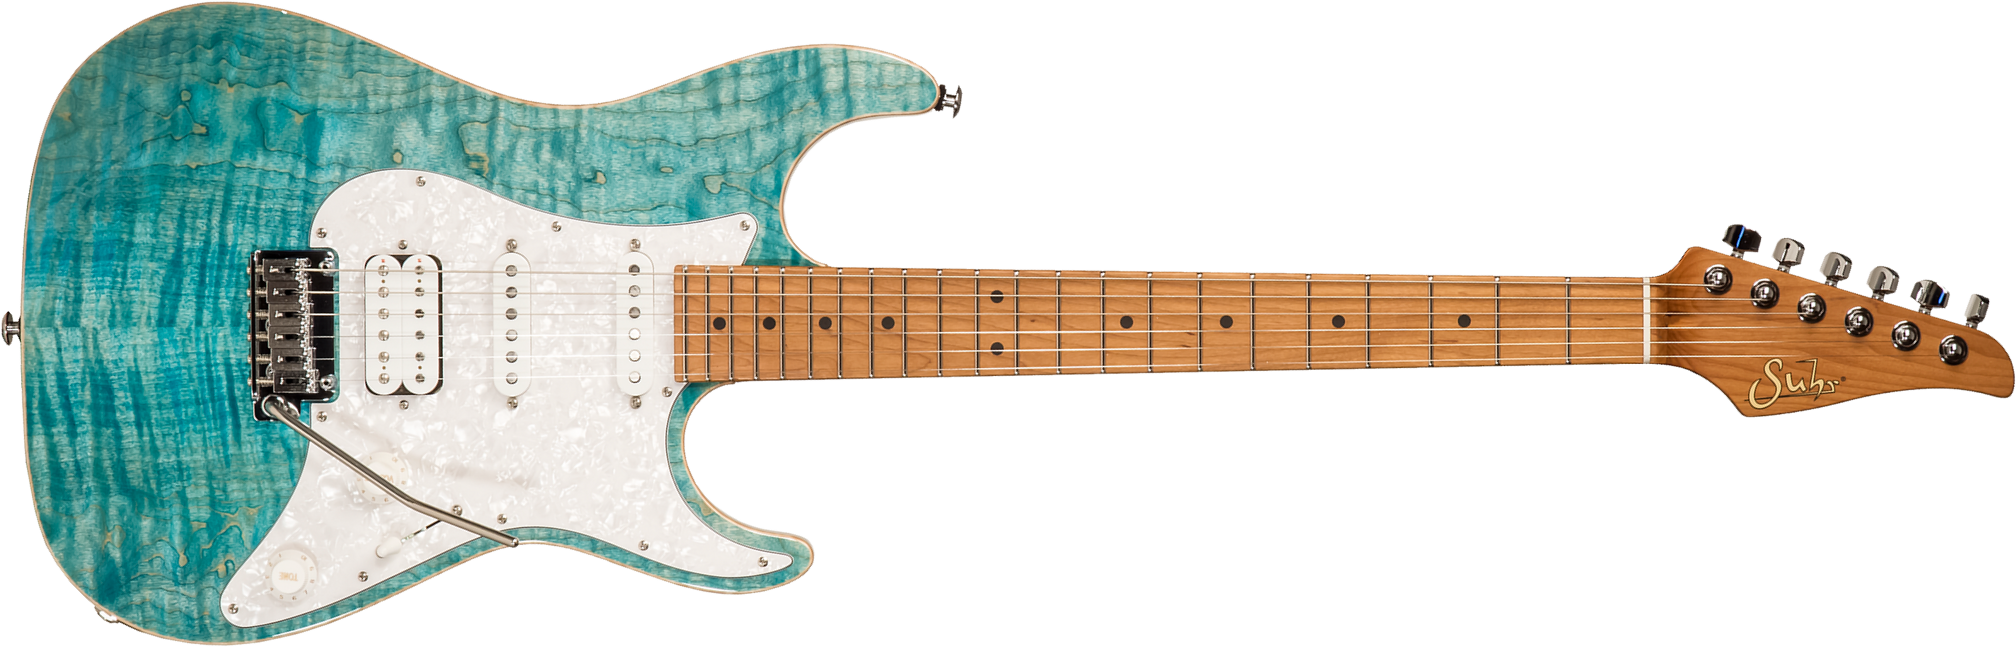 Suhr Standard Plus 01-stp-0041 Usa Hss Trem Mn #72737 - Bahama Blue - Guitarra eléctrica con forma de str. - Main picture